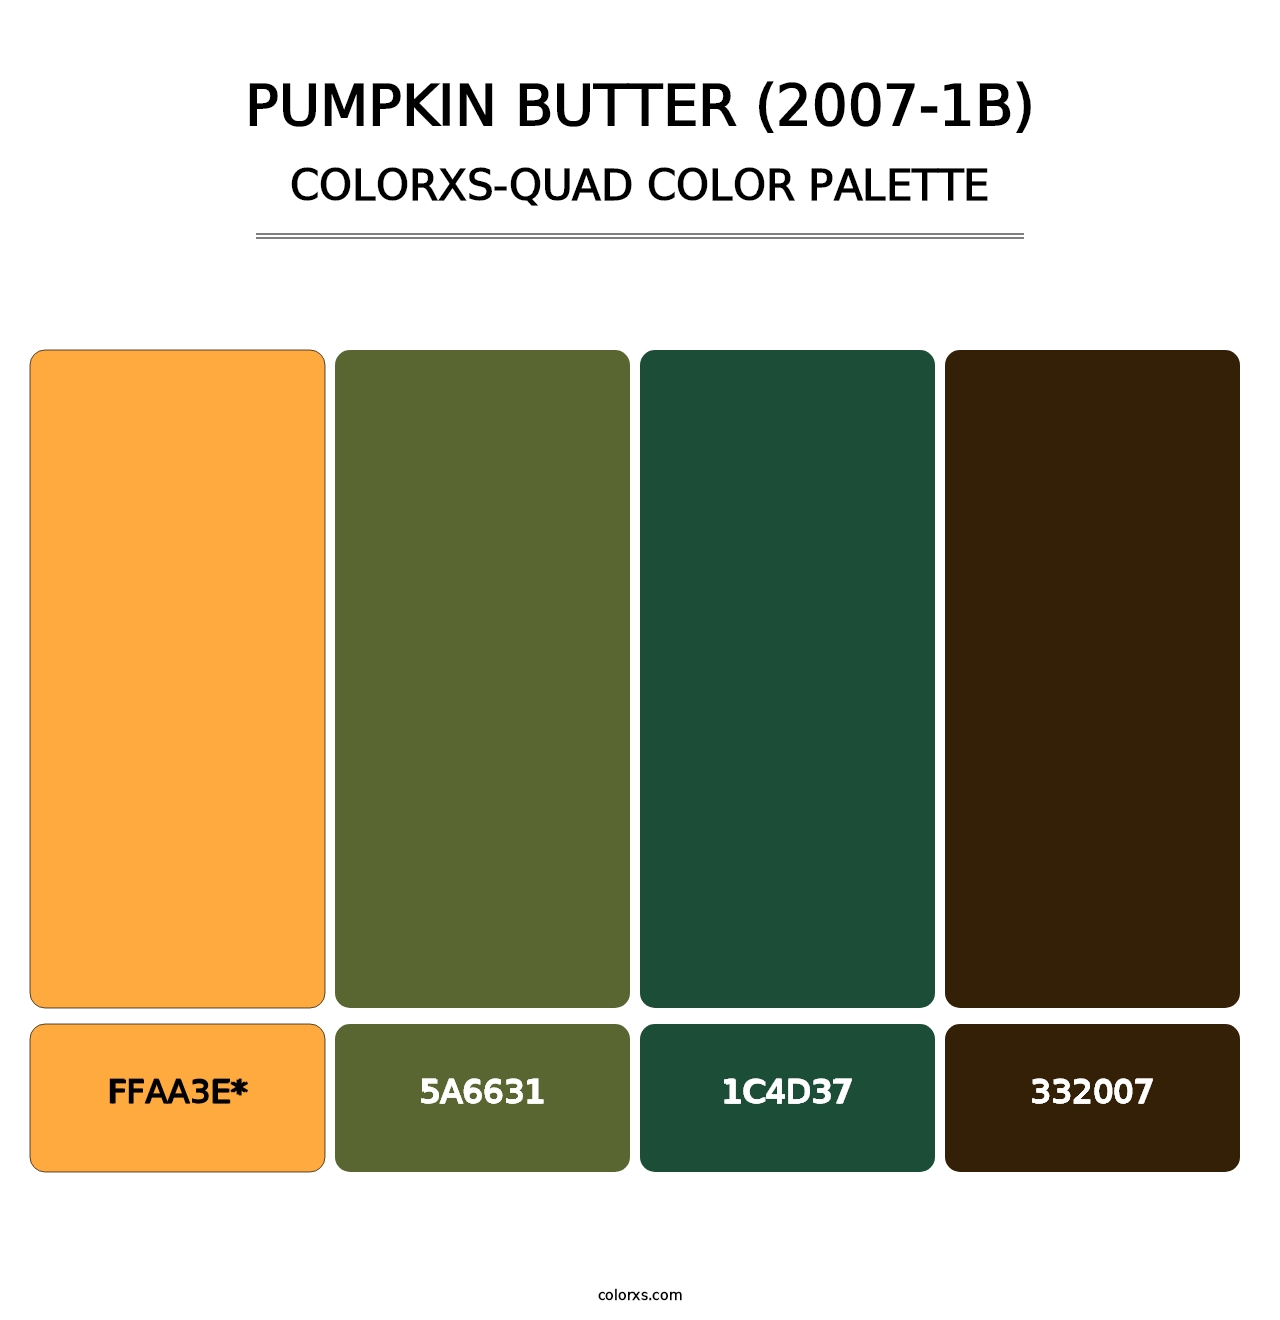 Pumpkin Butter (2007-1B) - Colorxs Quad Palette